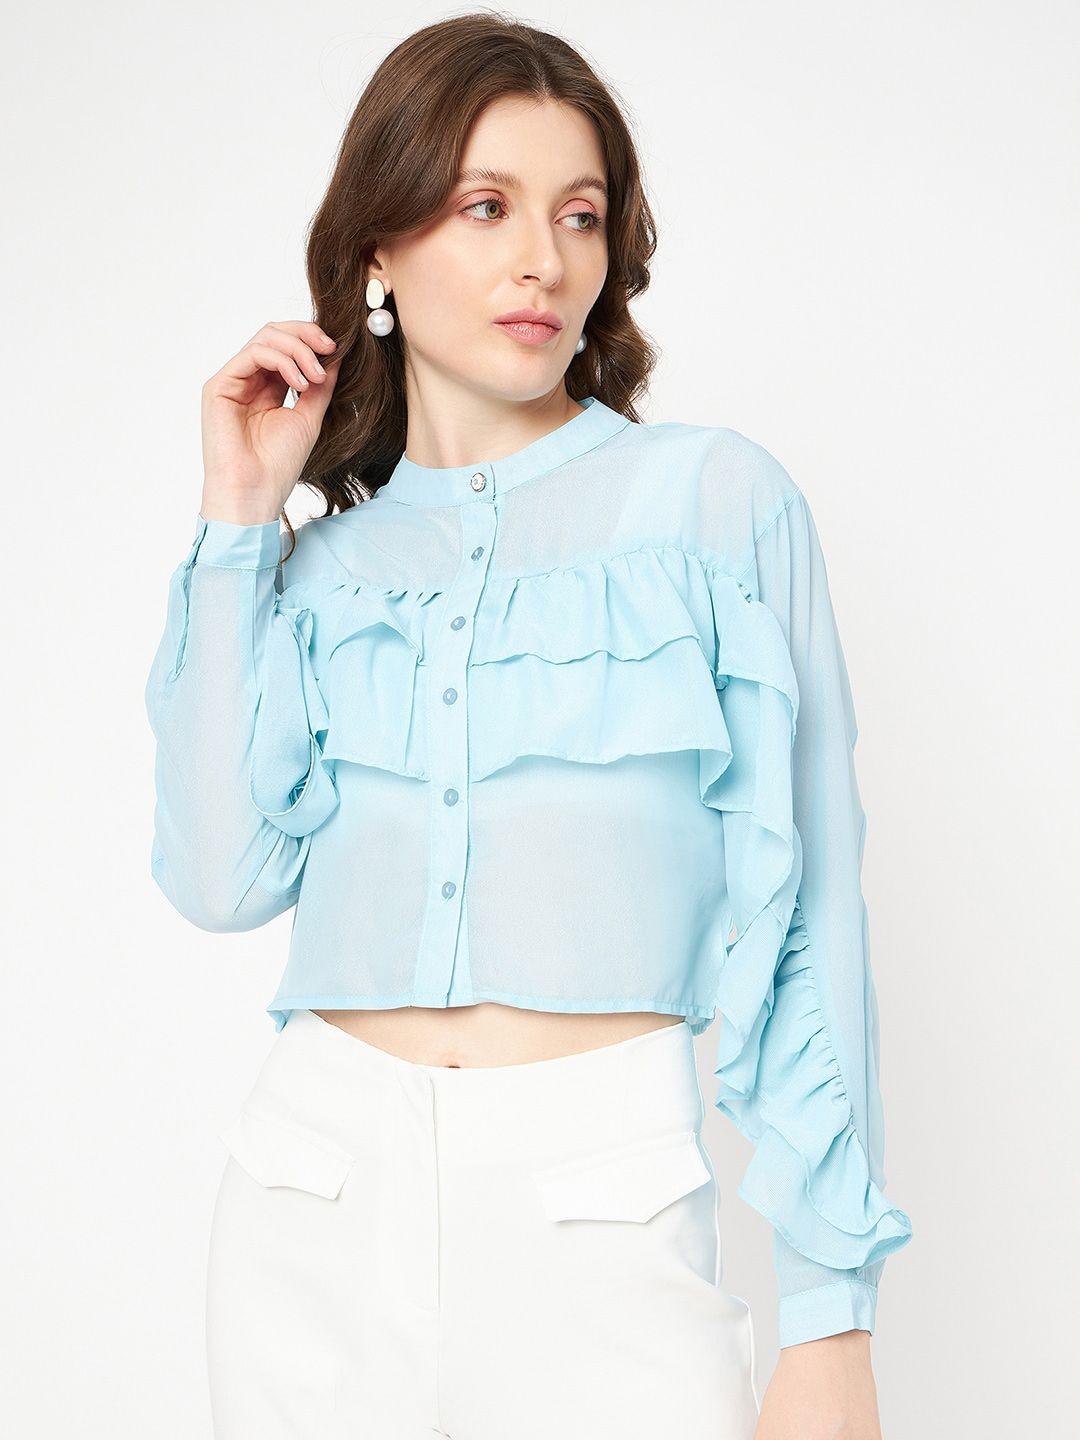 madame blue mandarin collar shirt style crop top